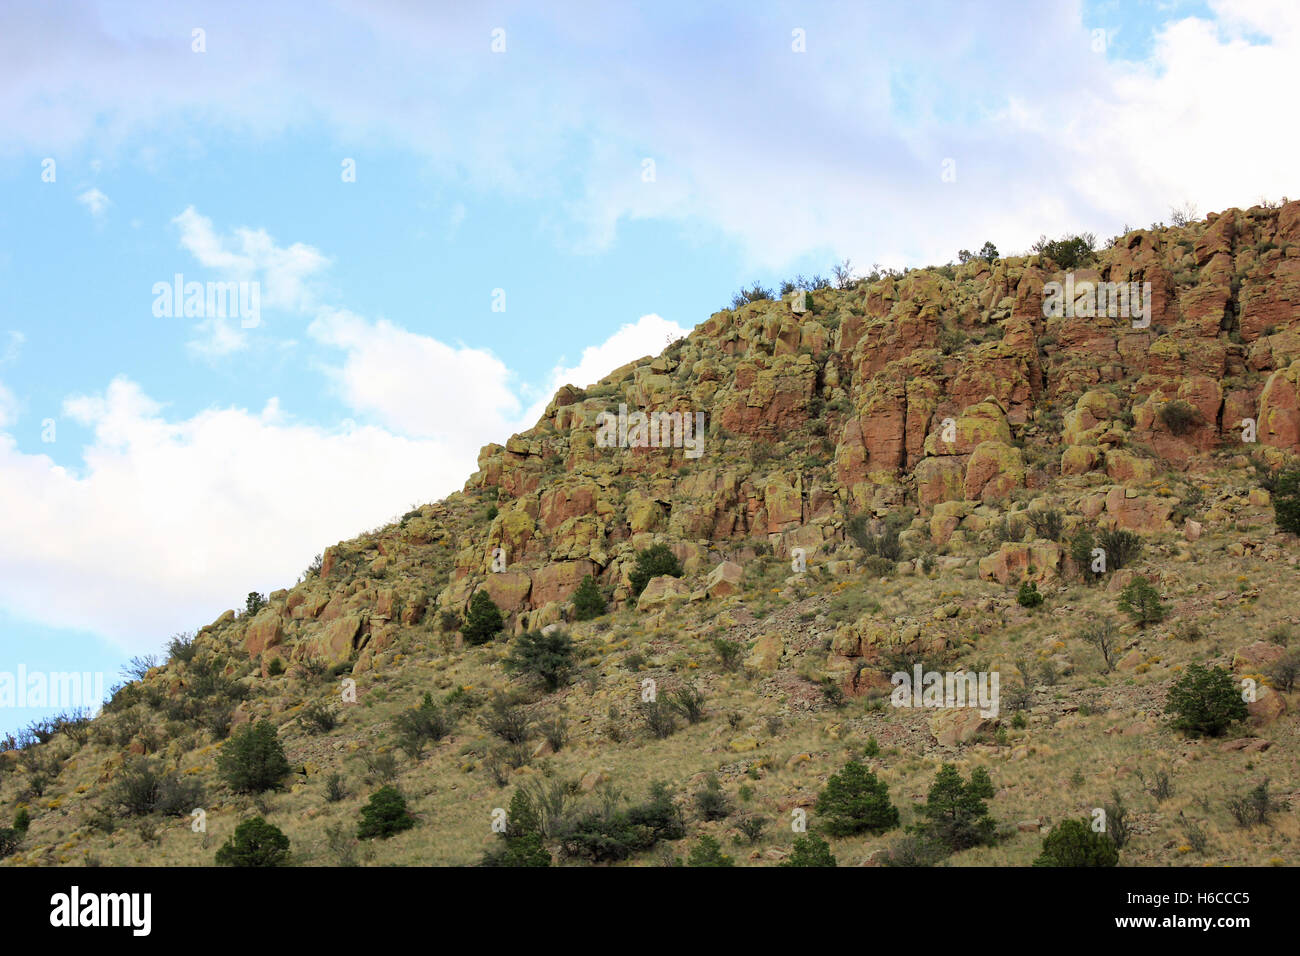 New Mexico mountain arid desert Stock Photo